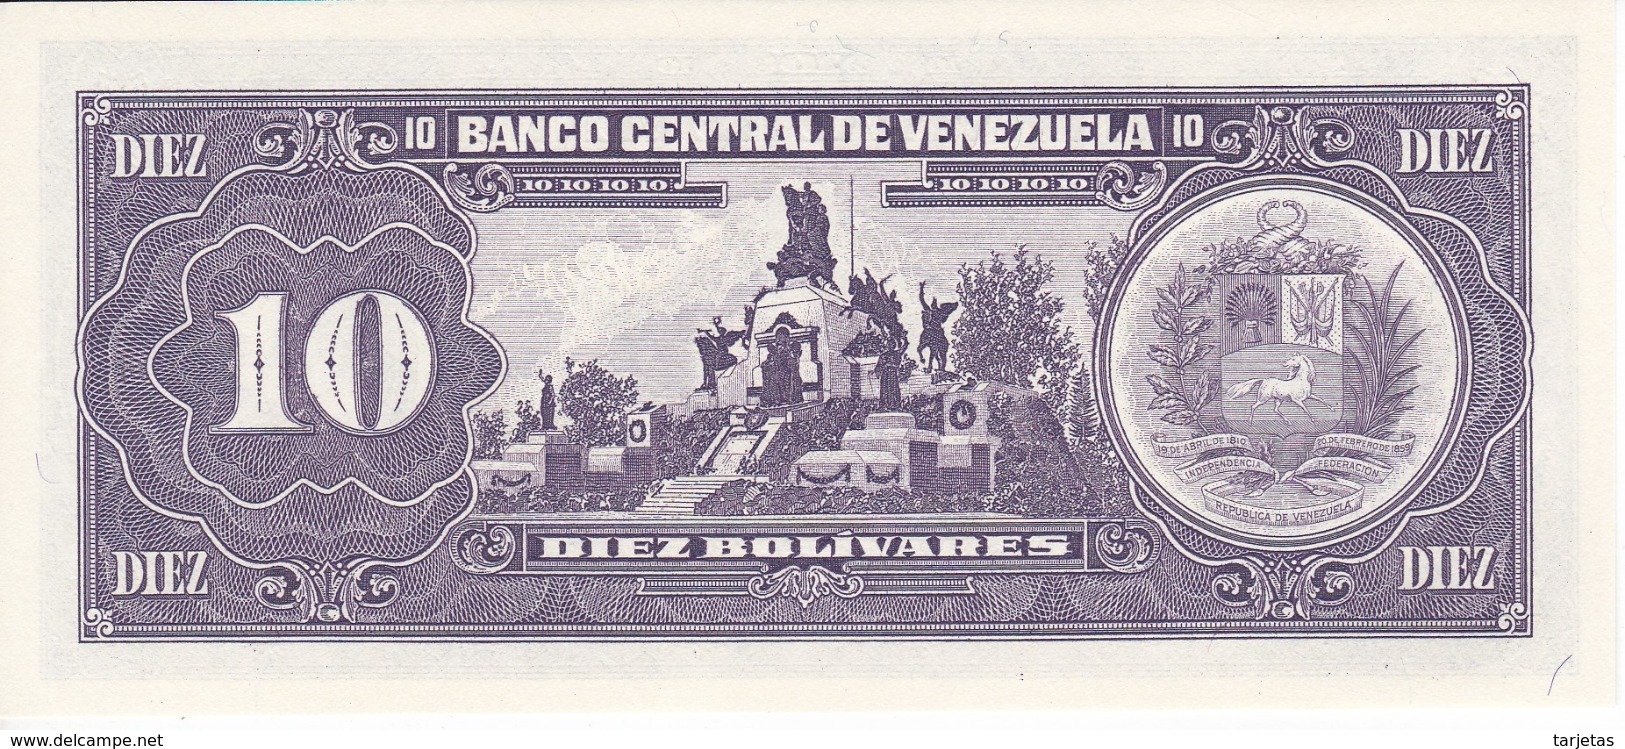 BILLETE DE VENEZUELA DE 10 BOLIVARES DEL AÑO 1995  SIN CIRCULAR  (BANKNOTE) UNCIRCULATED - Venezuela